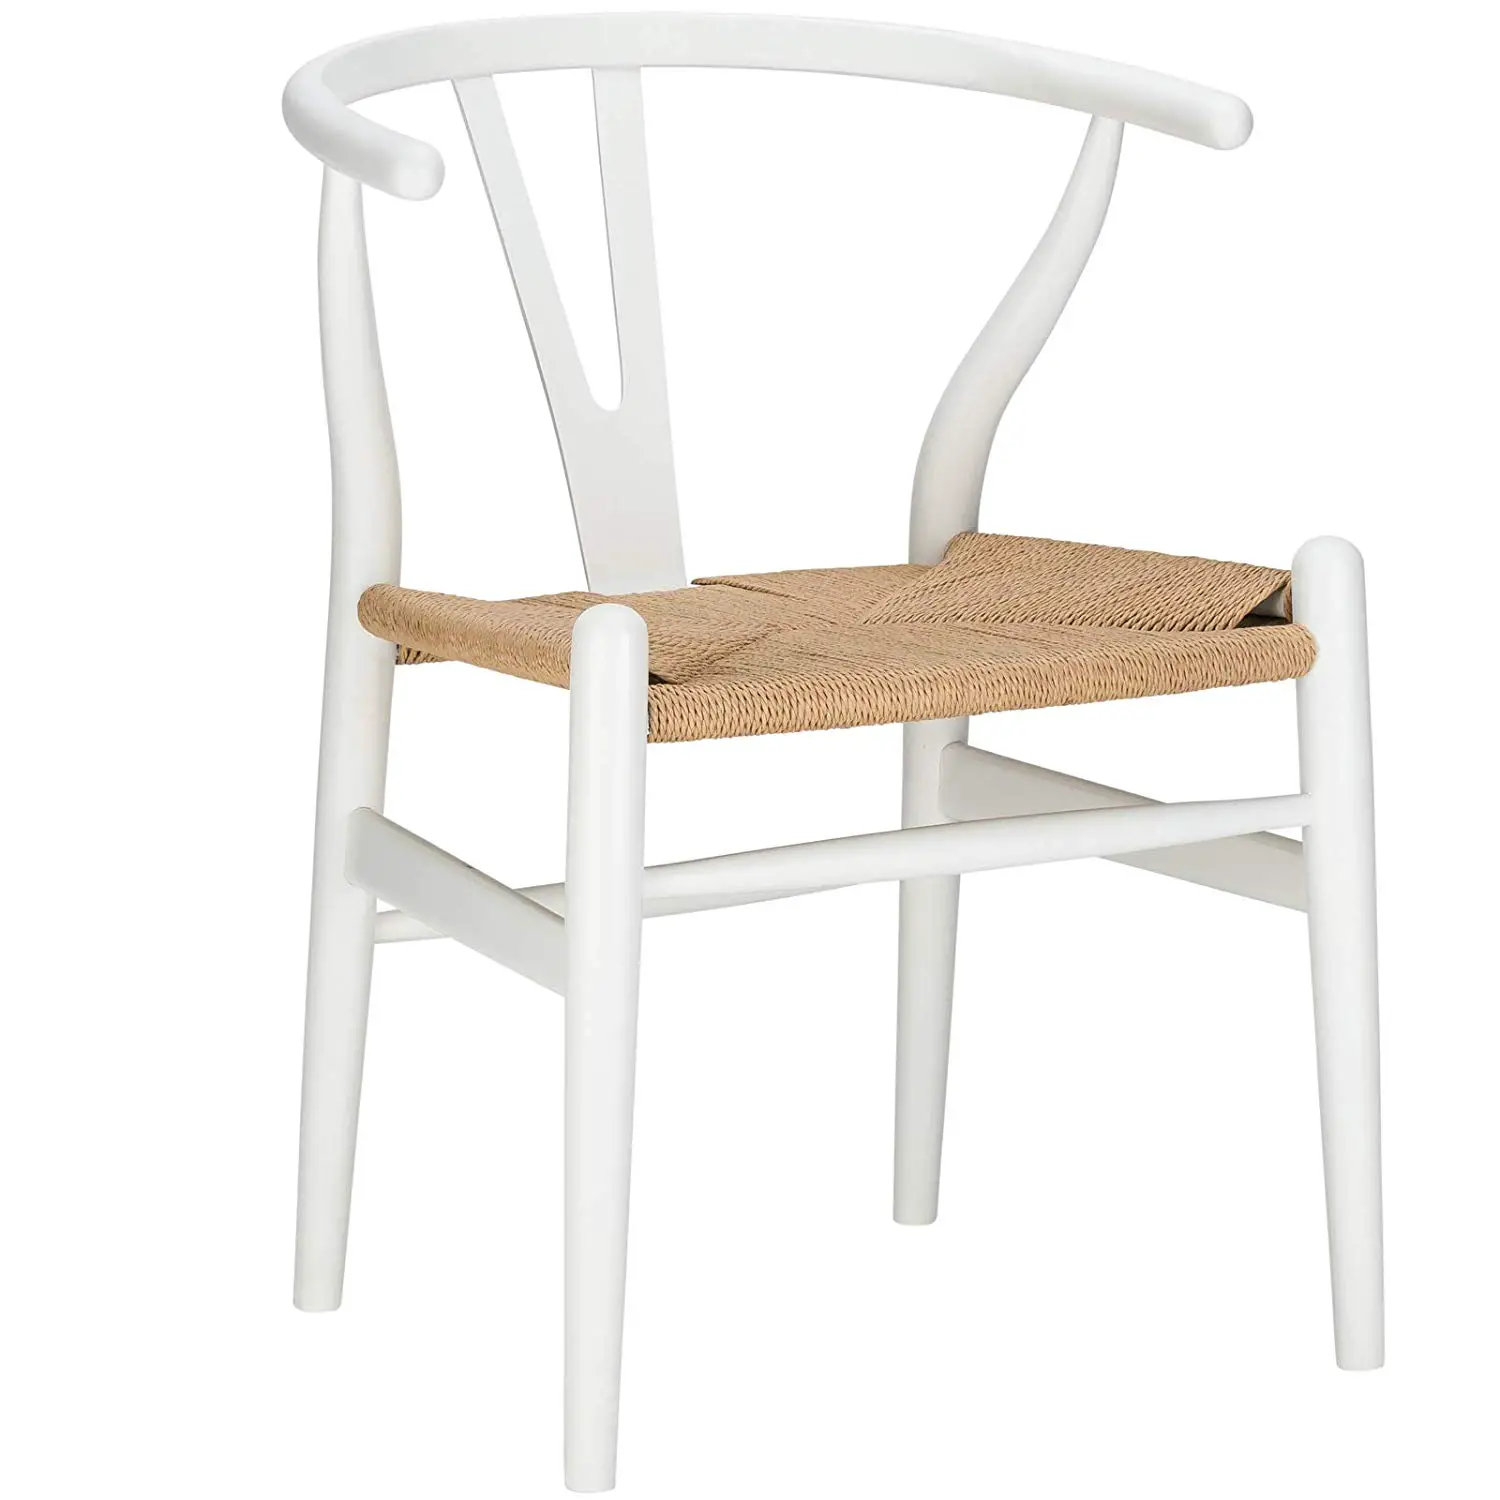 White wishbone dining chairs